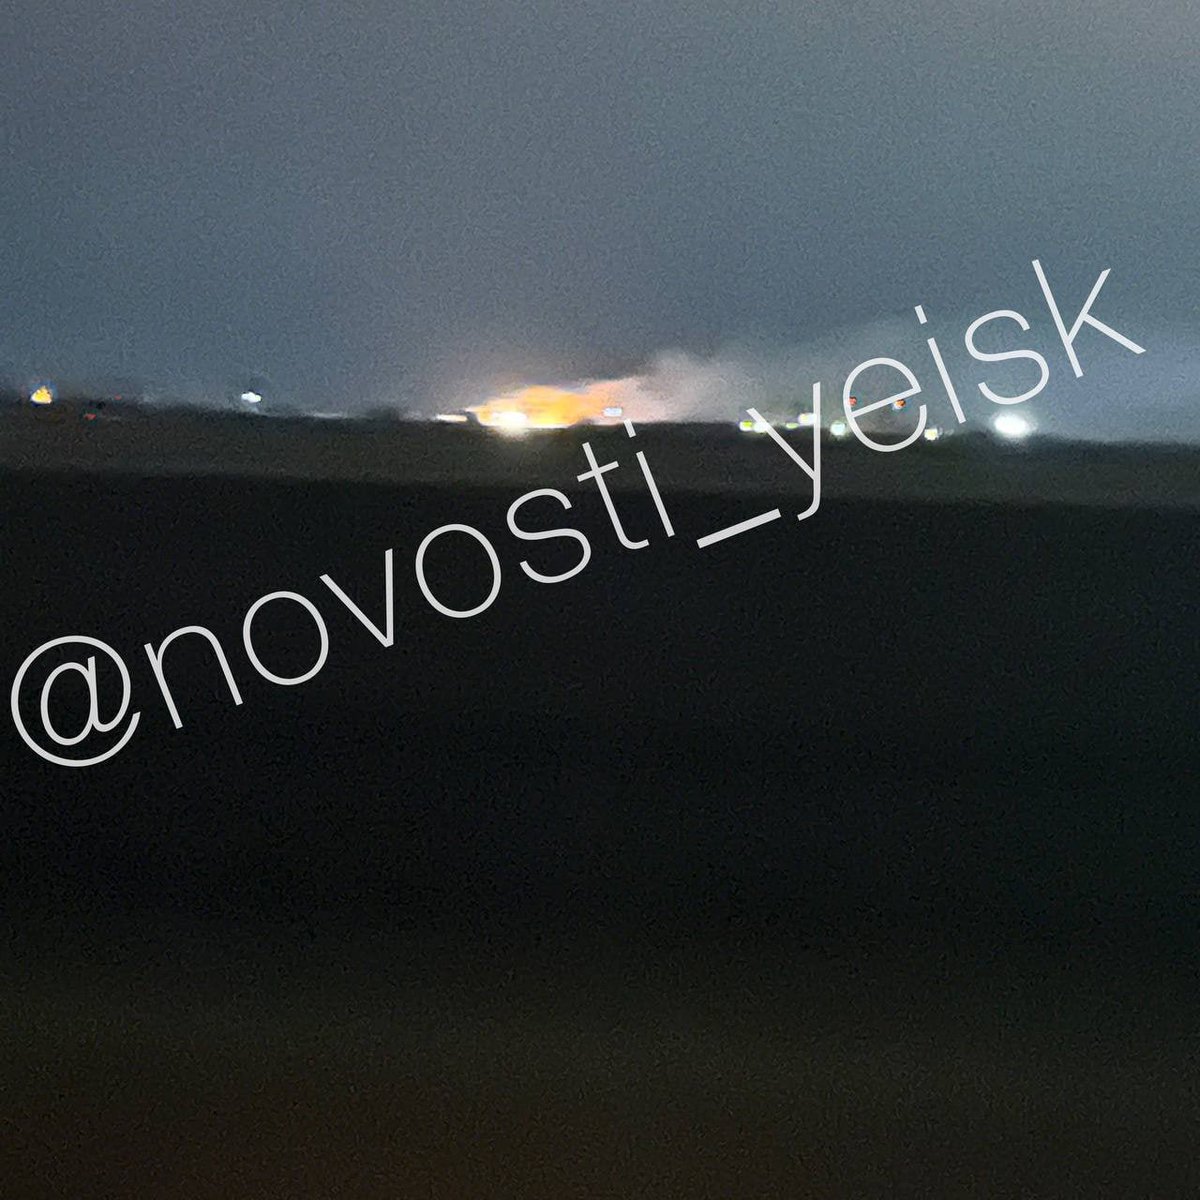 Se reportaron incendios y explosiones cerca de la base aérea en Yeysk, Krasnodar Krai